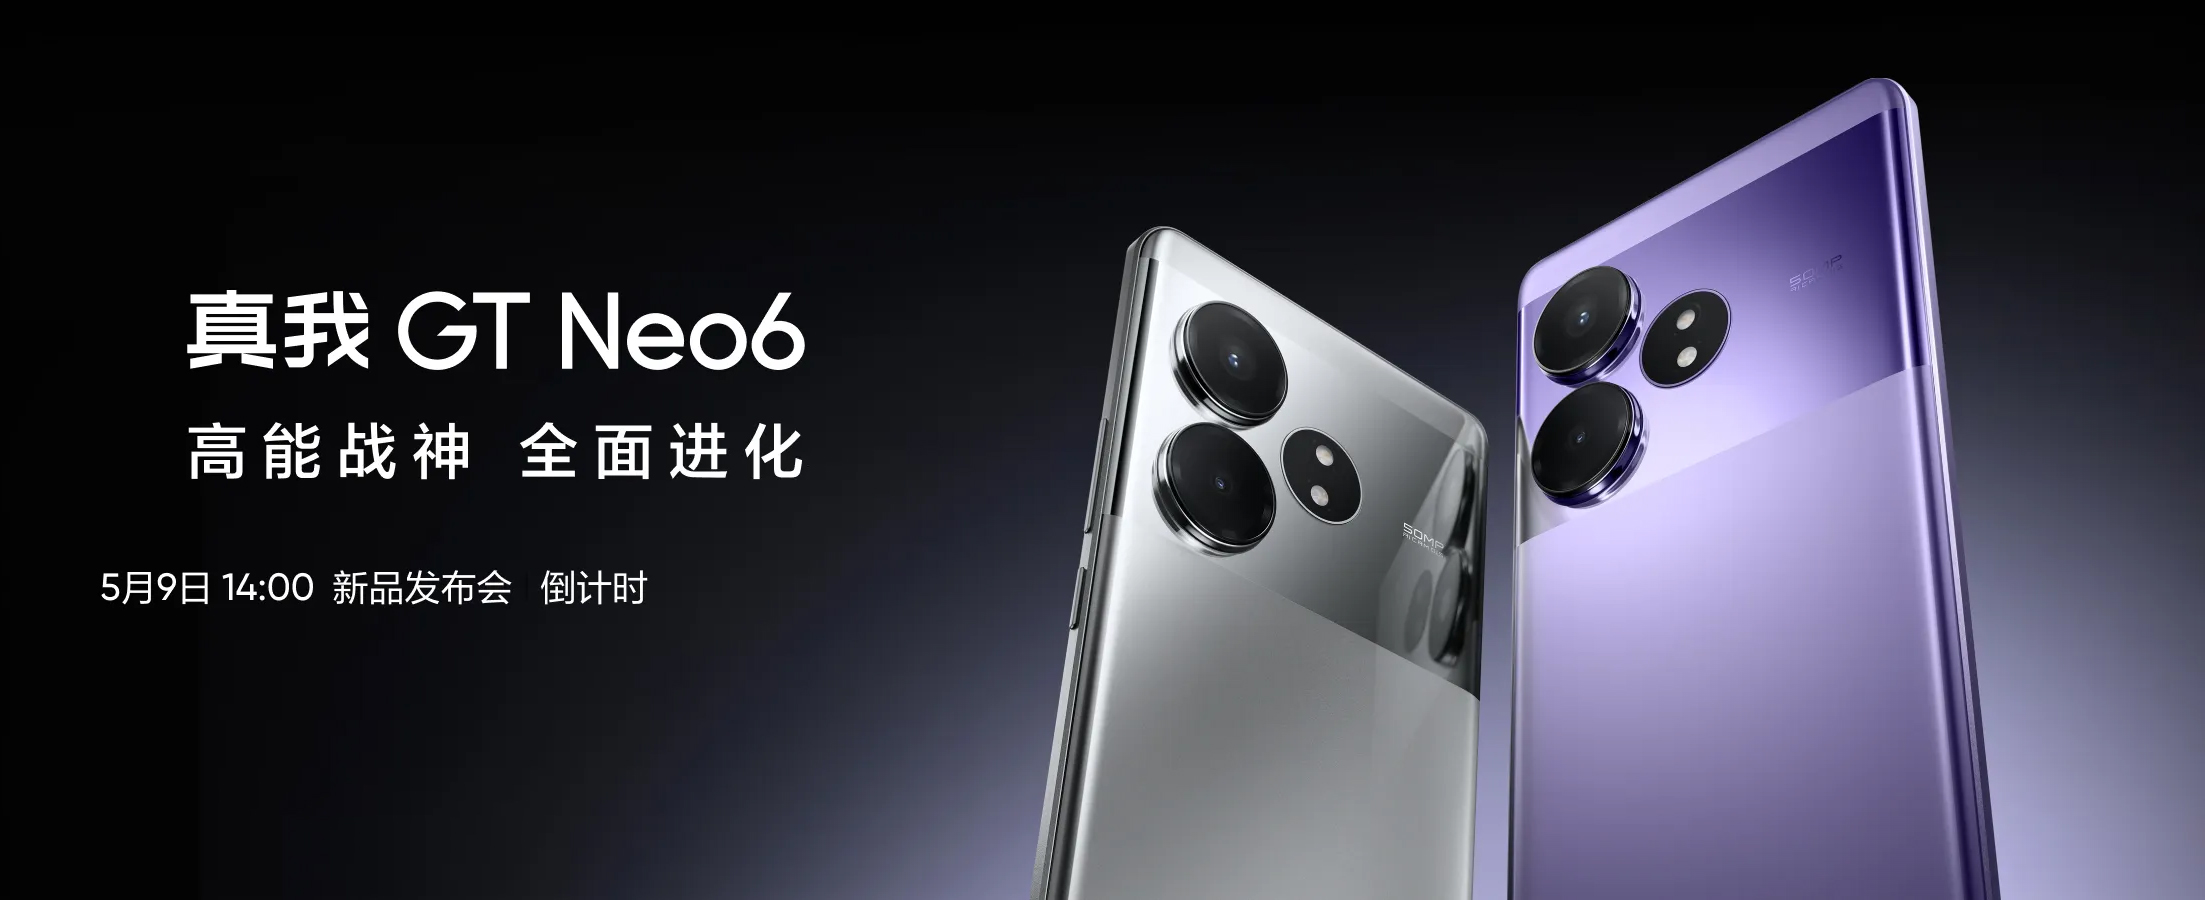 Realme GT Neo6 выйдет позднее на этой неделе в Китае